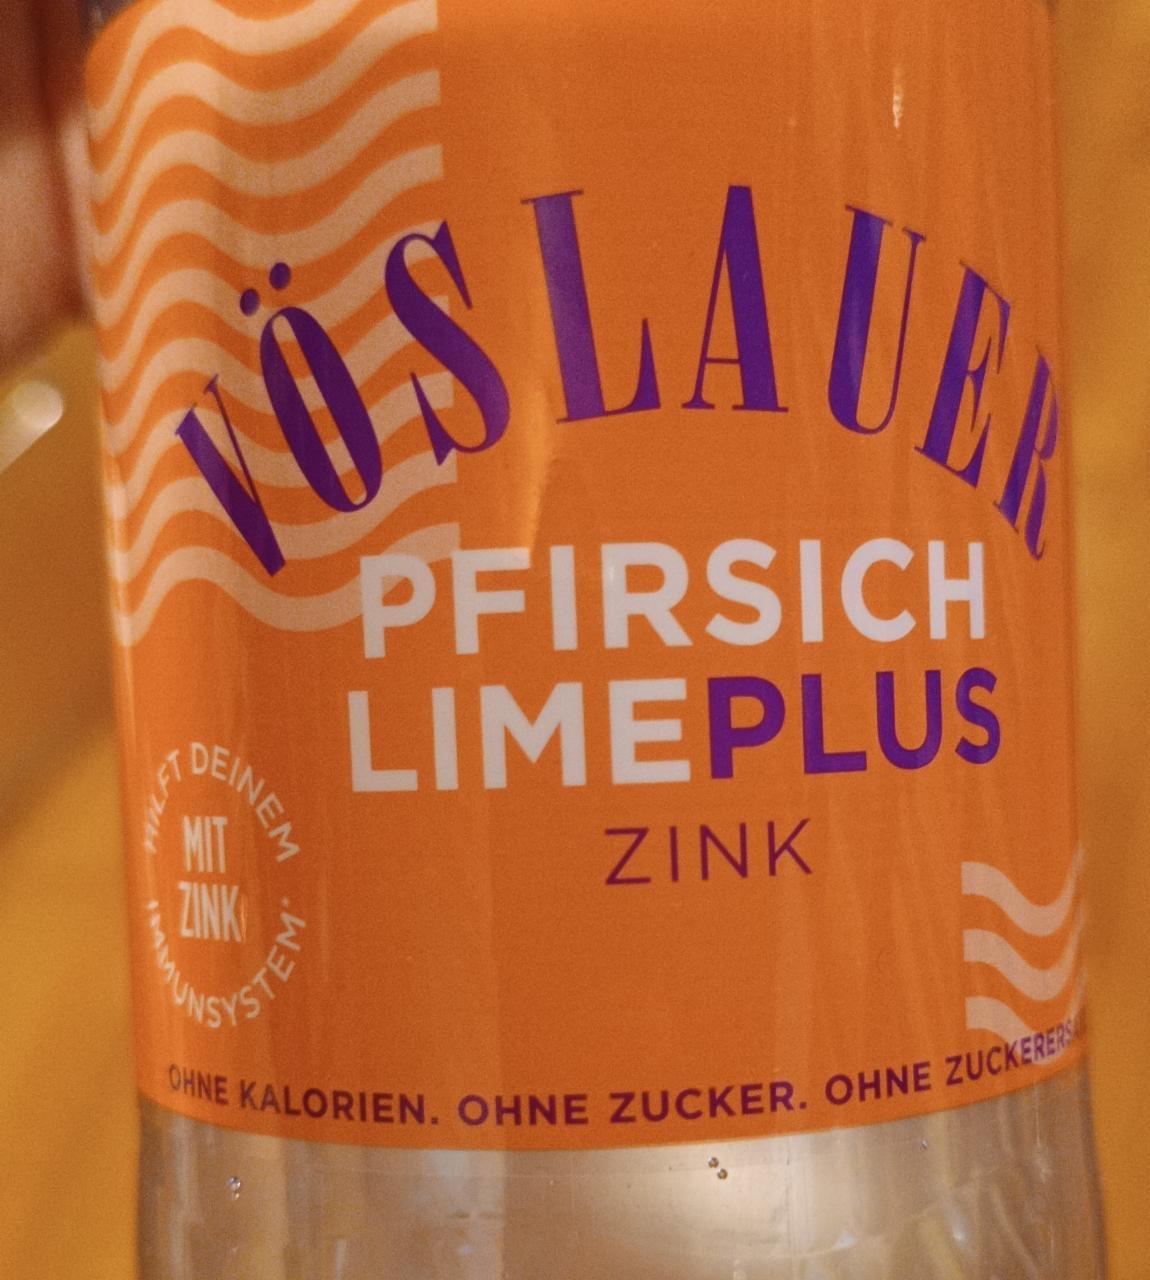 Képek - Pfirsich lime plus zink Vöslauer